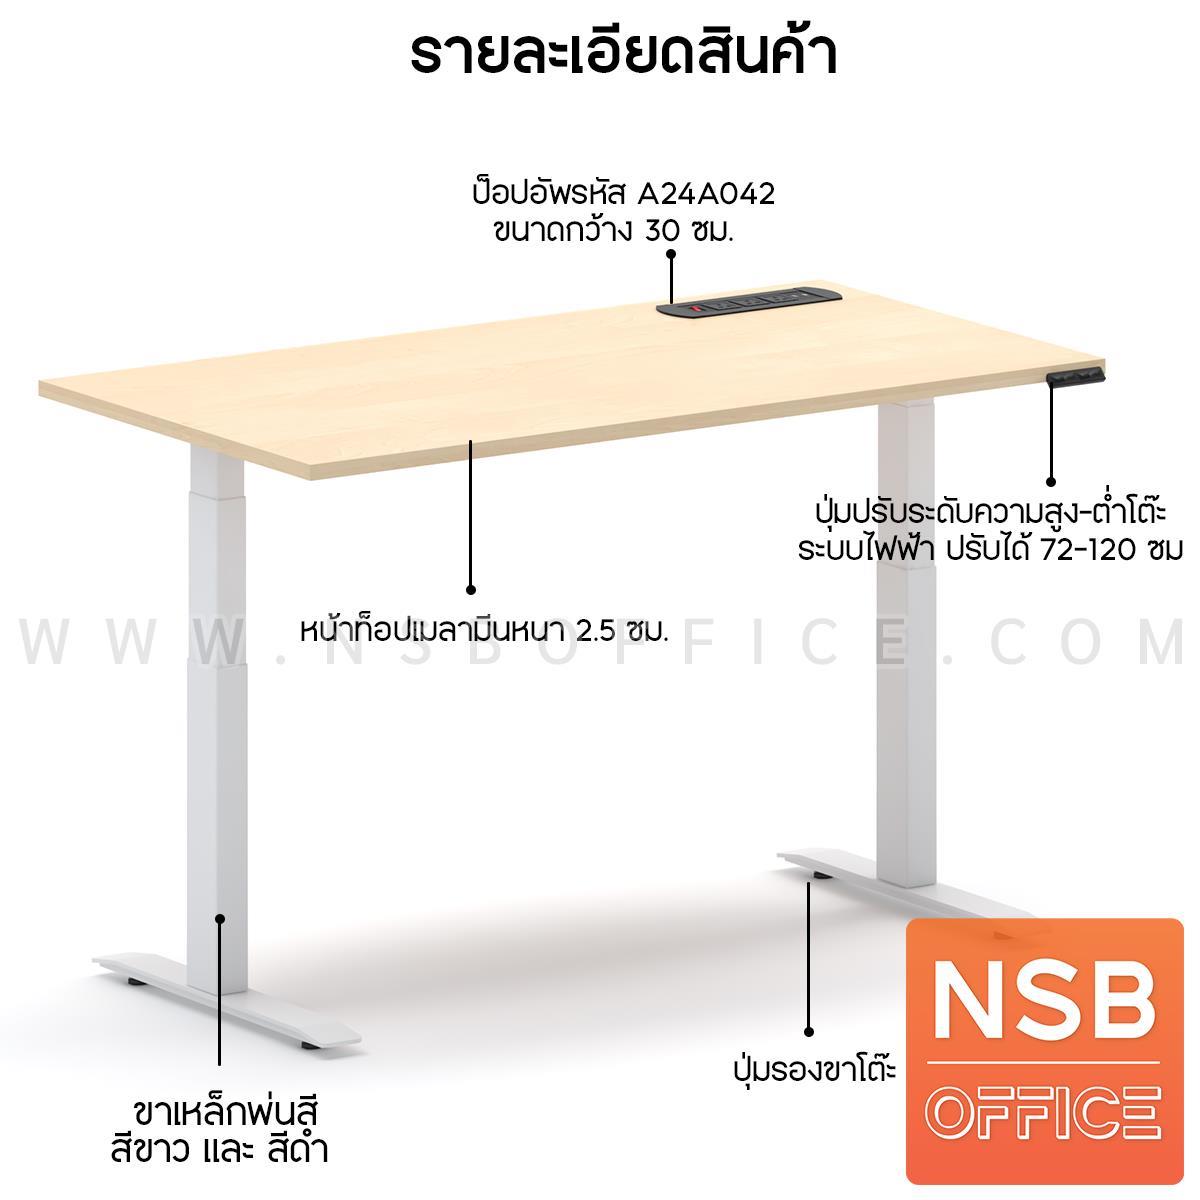 ชุดโต๊ะทำงานปรับระดับพร้อมเก้าอี้ผู้บริหาร   (Modern Desk n